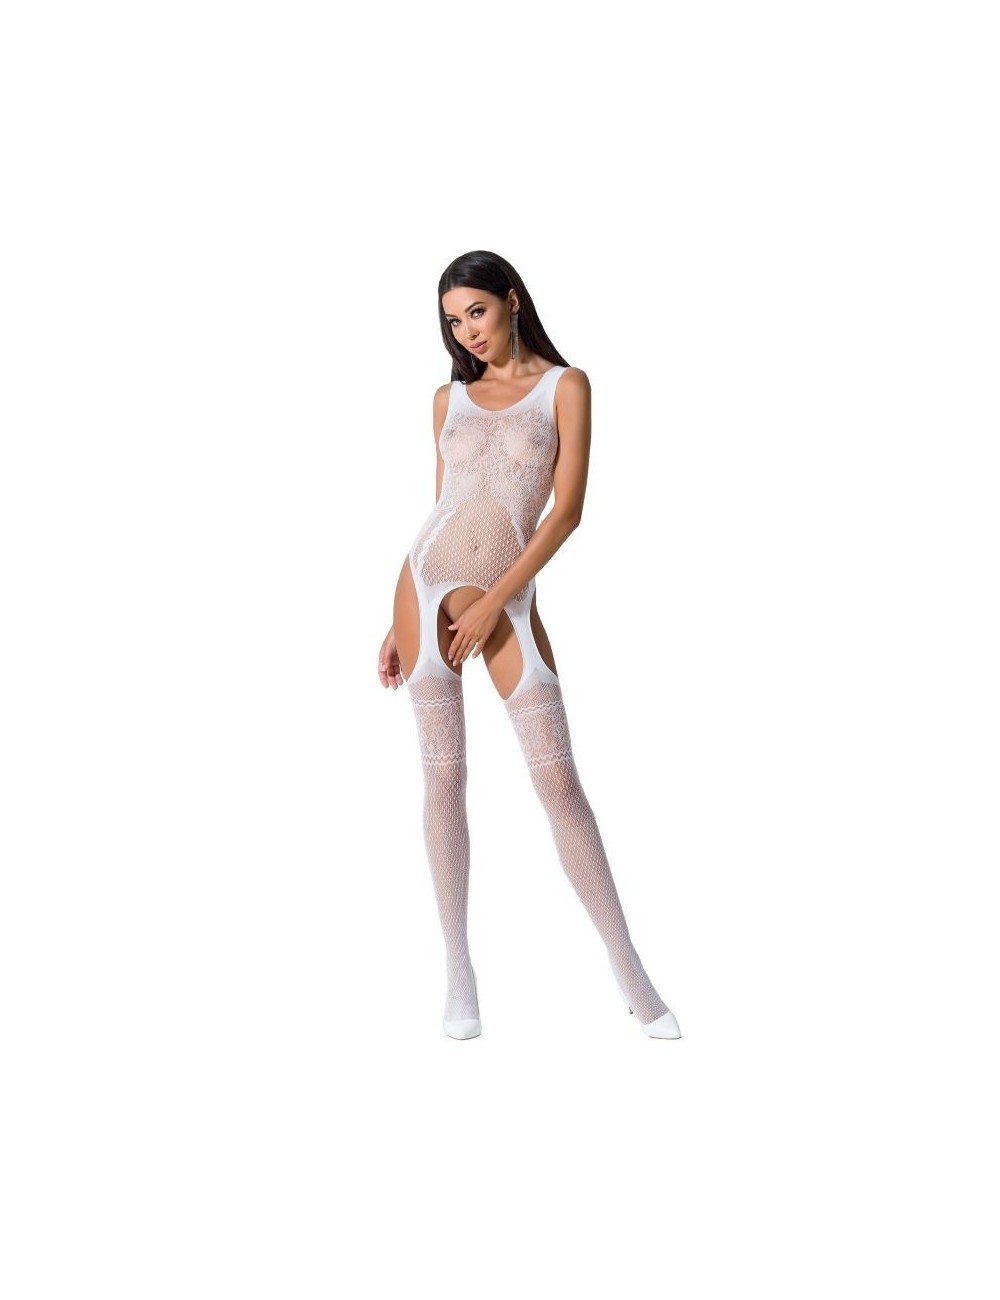 Lingerie - Combinaisons - Passion woman bs061 bodystocking blanc taille unique - Passion Woman Bodystockings